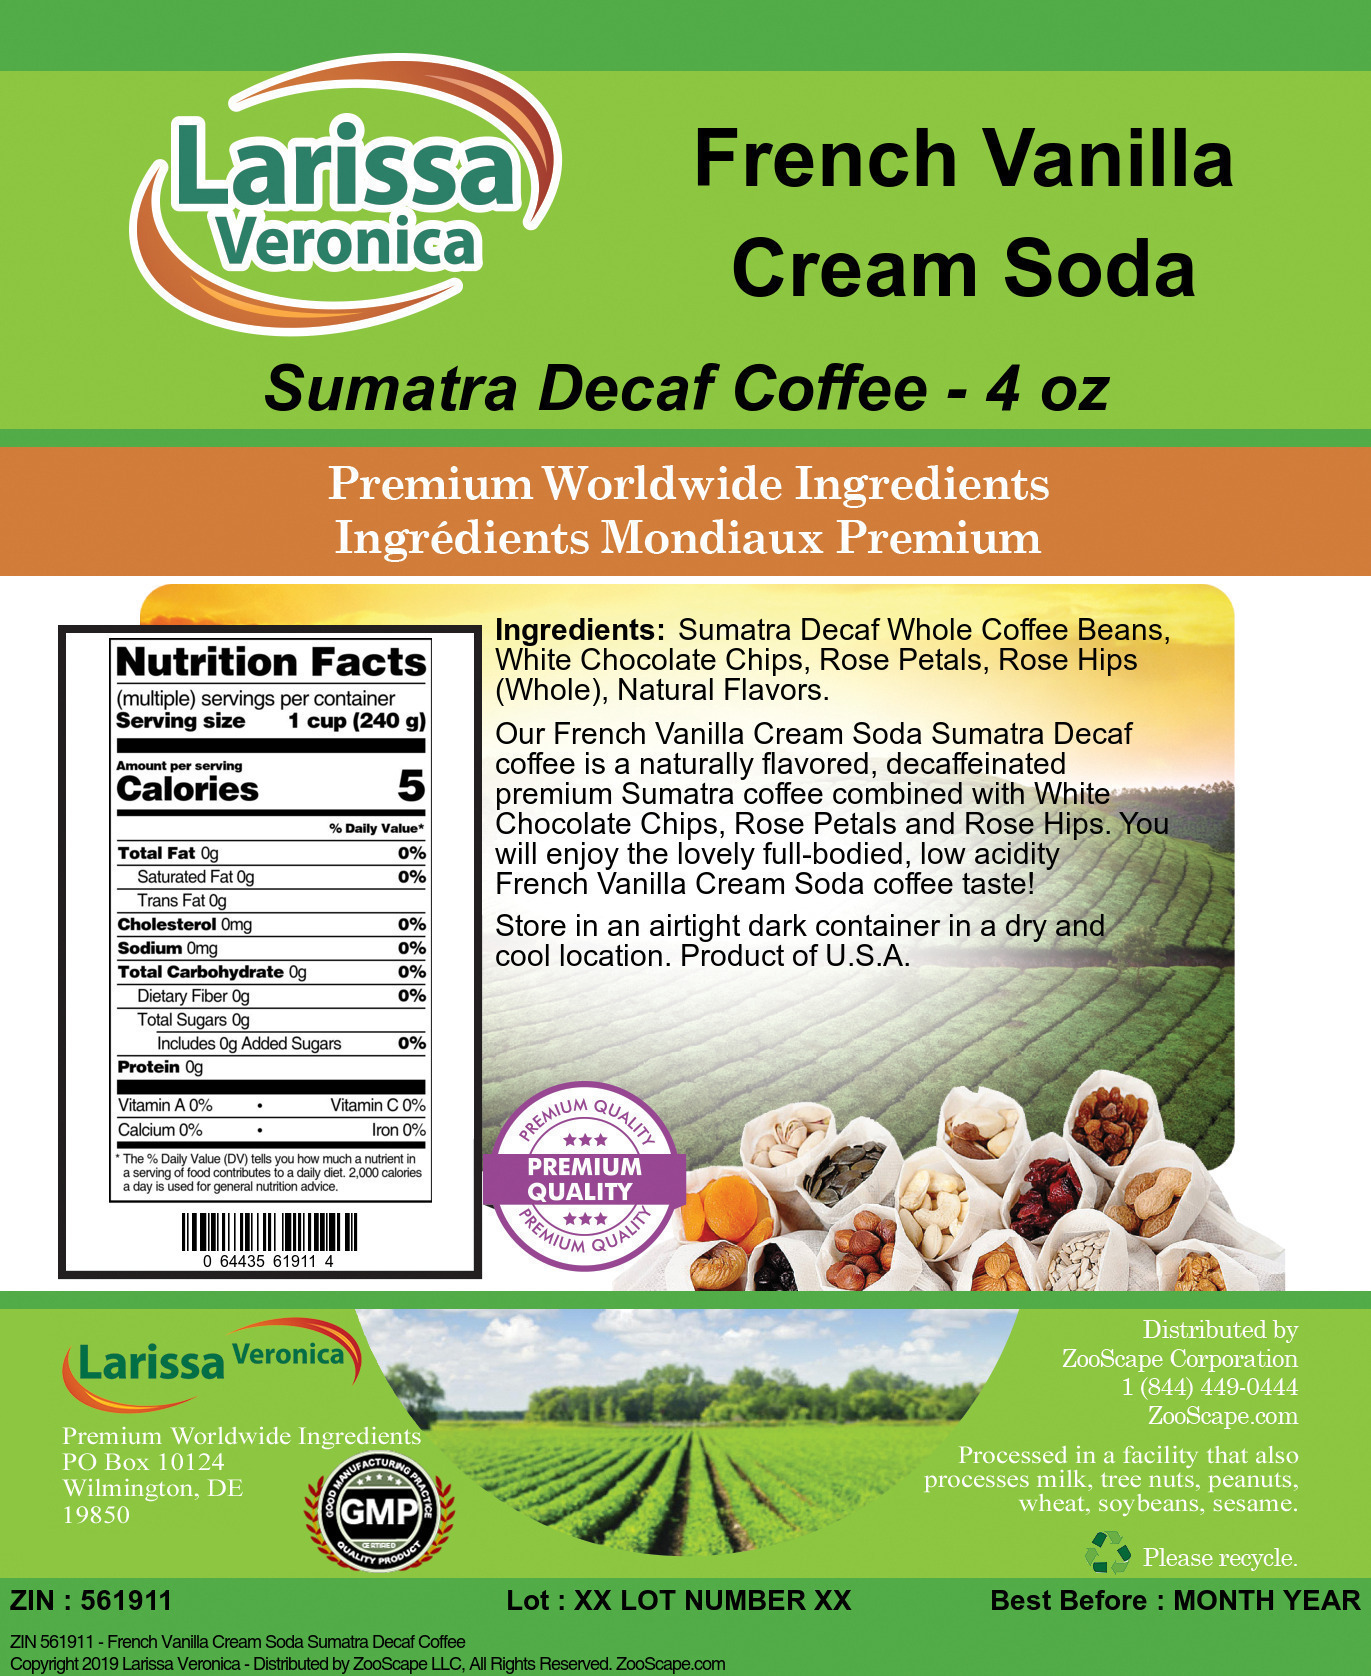 French Vanilla Cream Soda Sumatra Decaf Coffee - Label